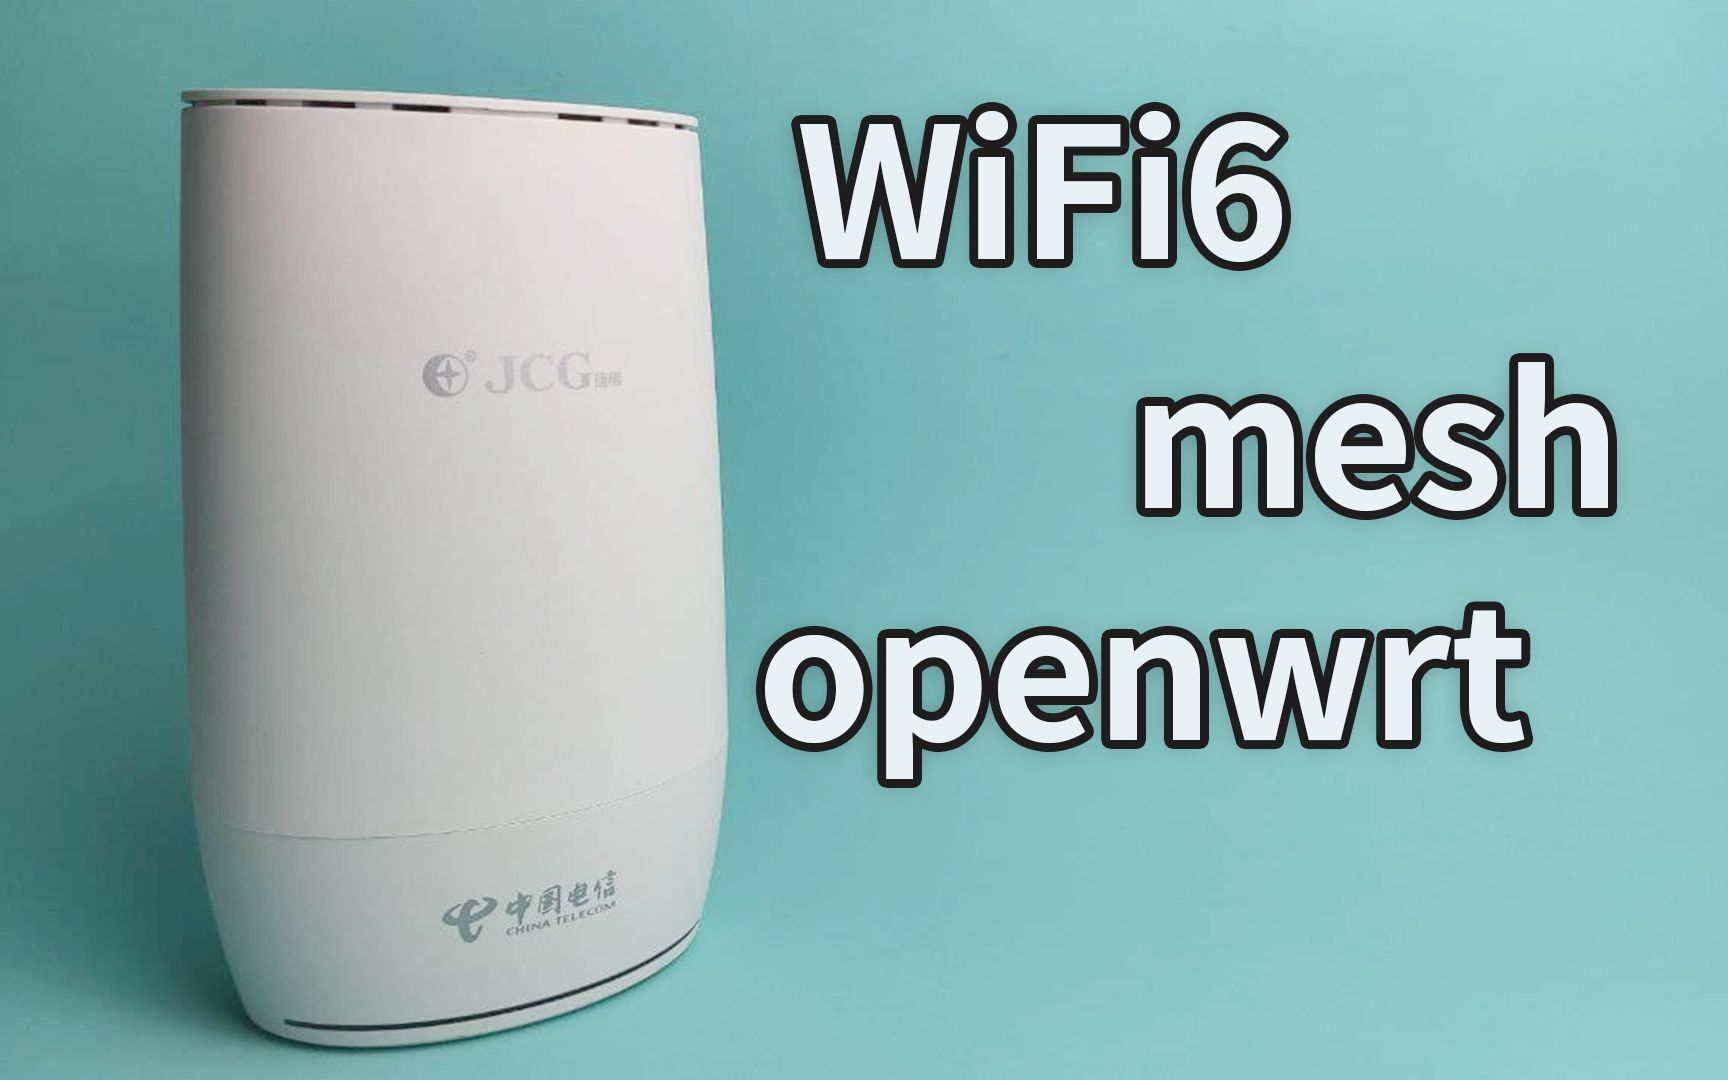 电信WiFi6路由器JCG Q20刷机与使用体验